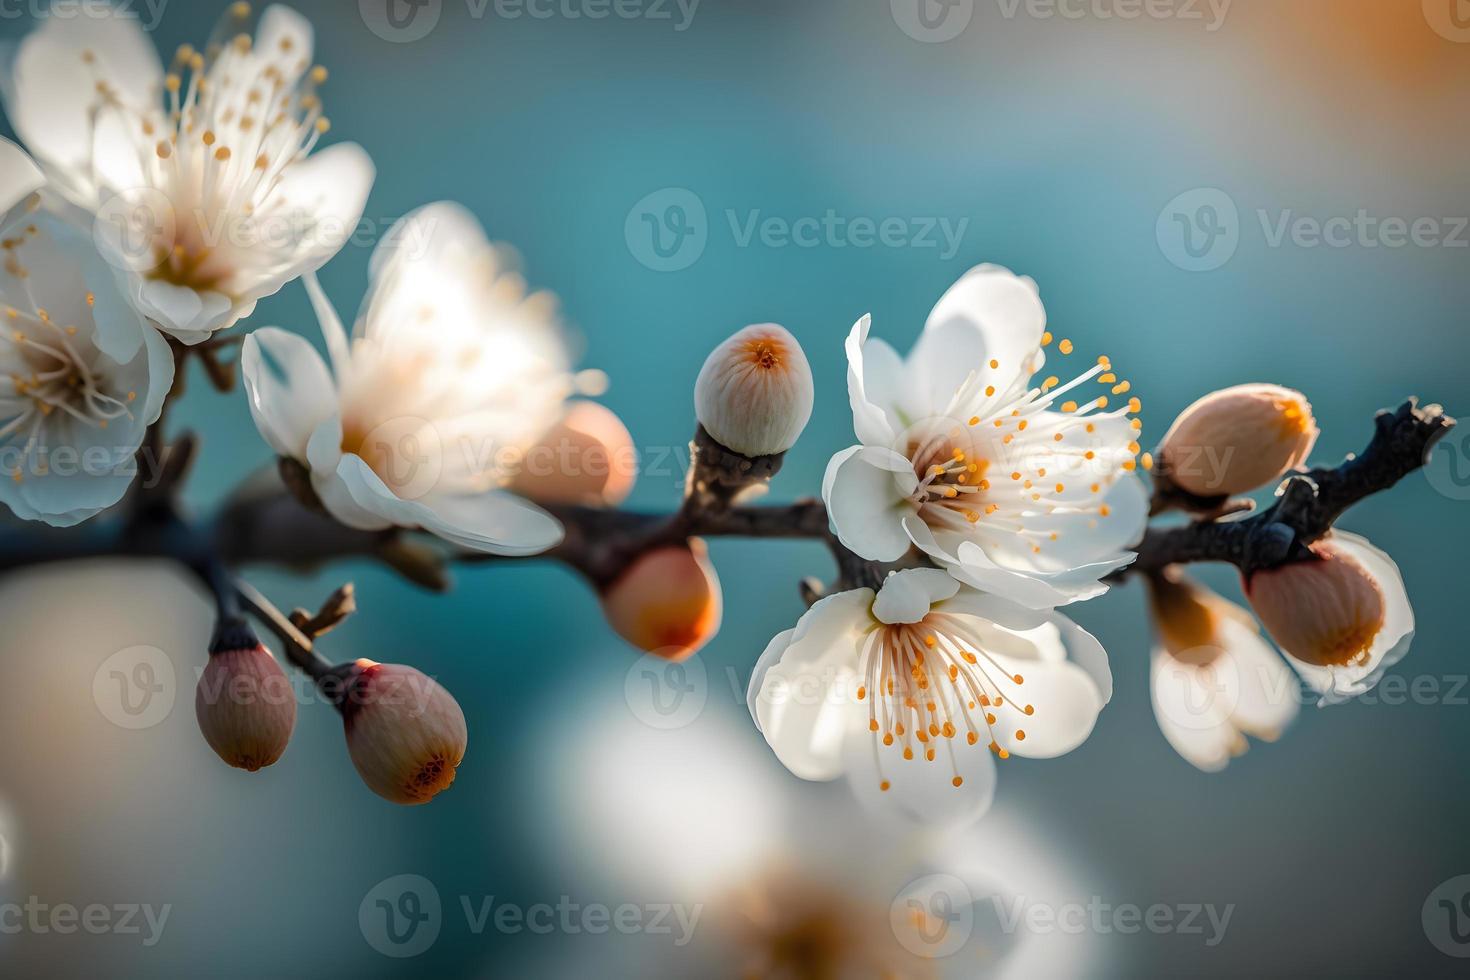 Fotos schön Blumen- Frühling abstrakt Hintergrund von Natur. Geäst von blühen Aprikose Makro mit Sanft Fokus auf sanft Licht Blau Himmel Hintergrund